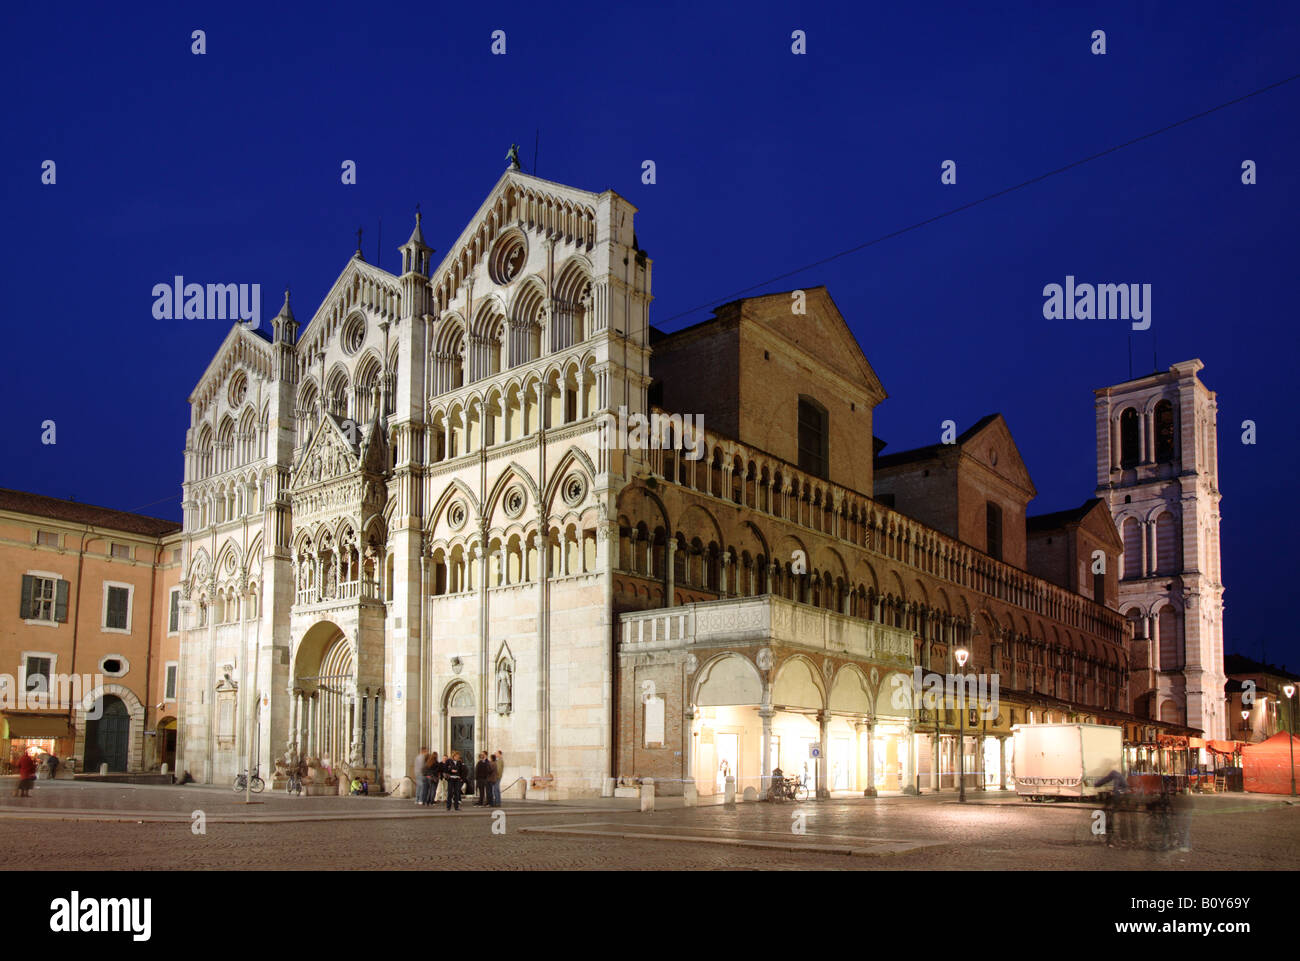 Facade of San Giorgio's cathedral, Ferrara, Italy Stock Photo